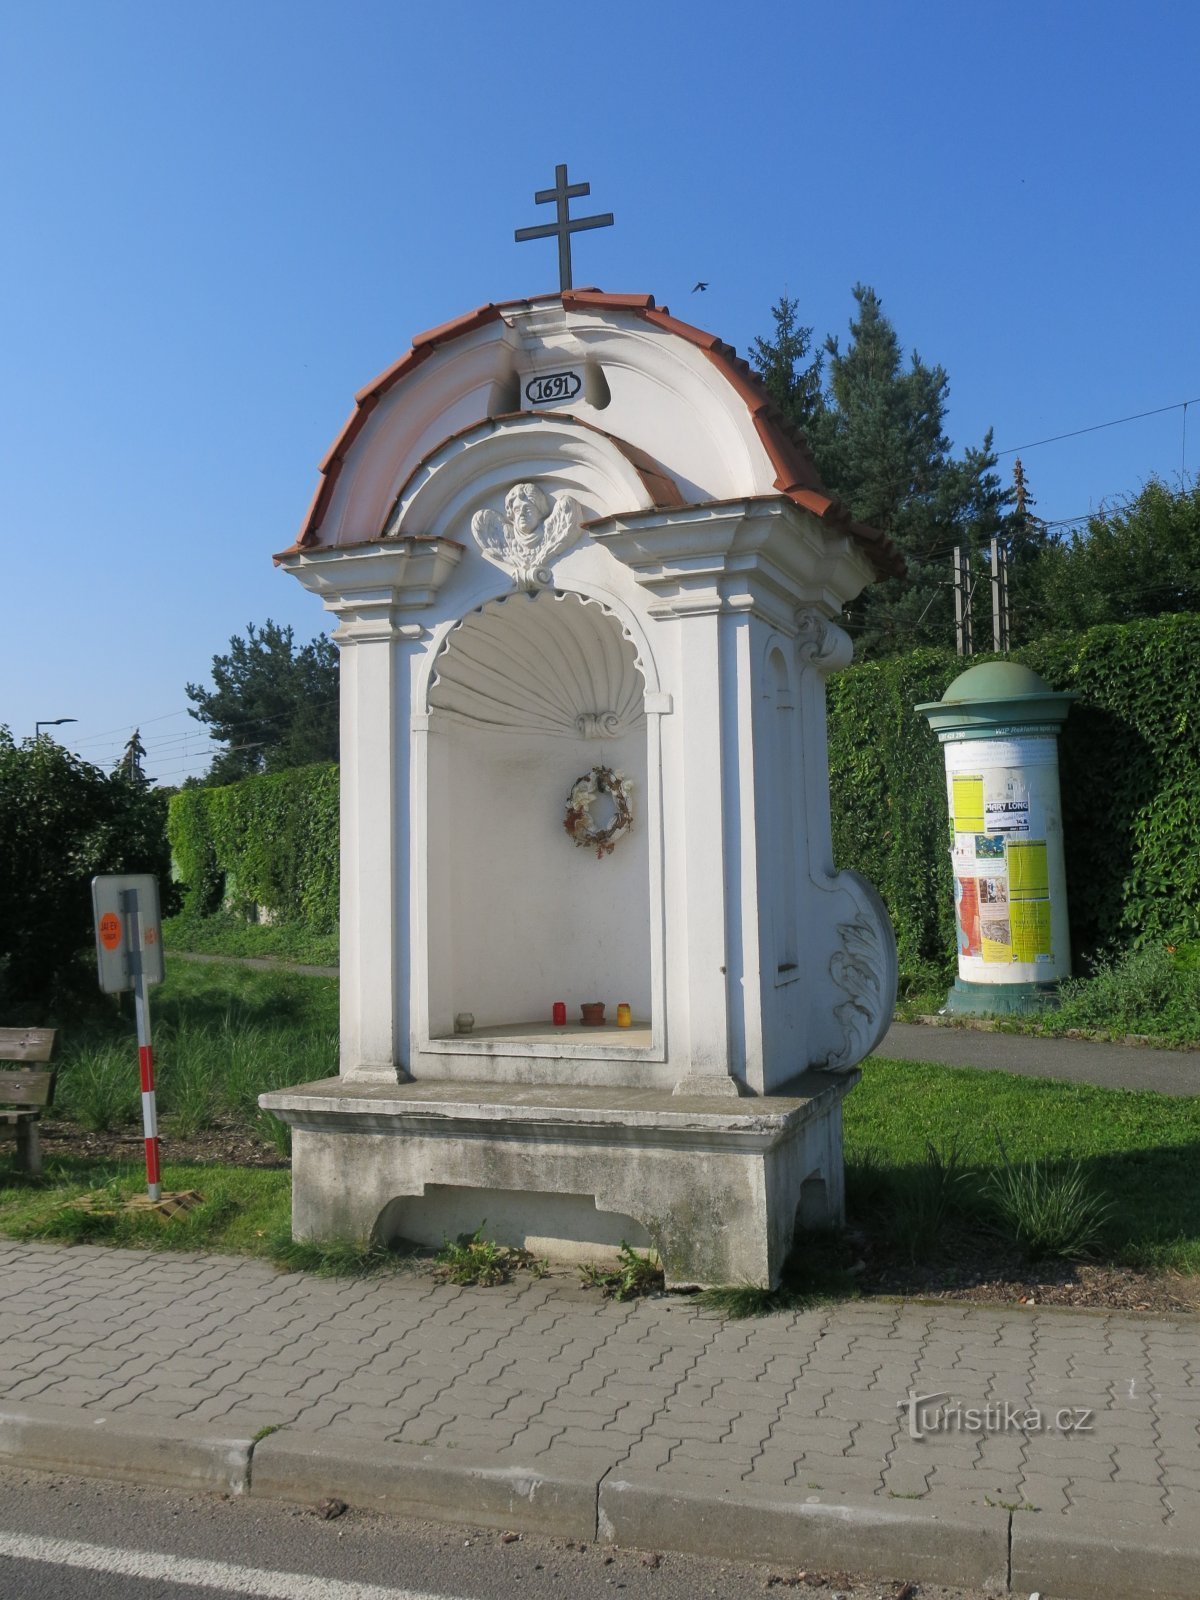 Planá nad Lužnicí - nhà nguyện của St. Barbara